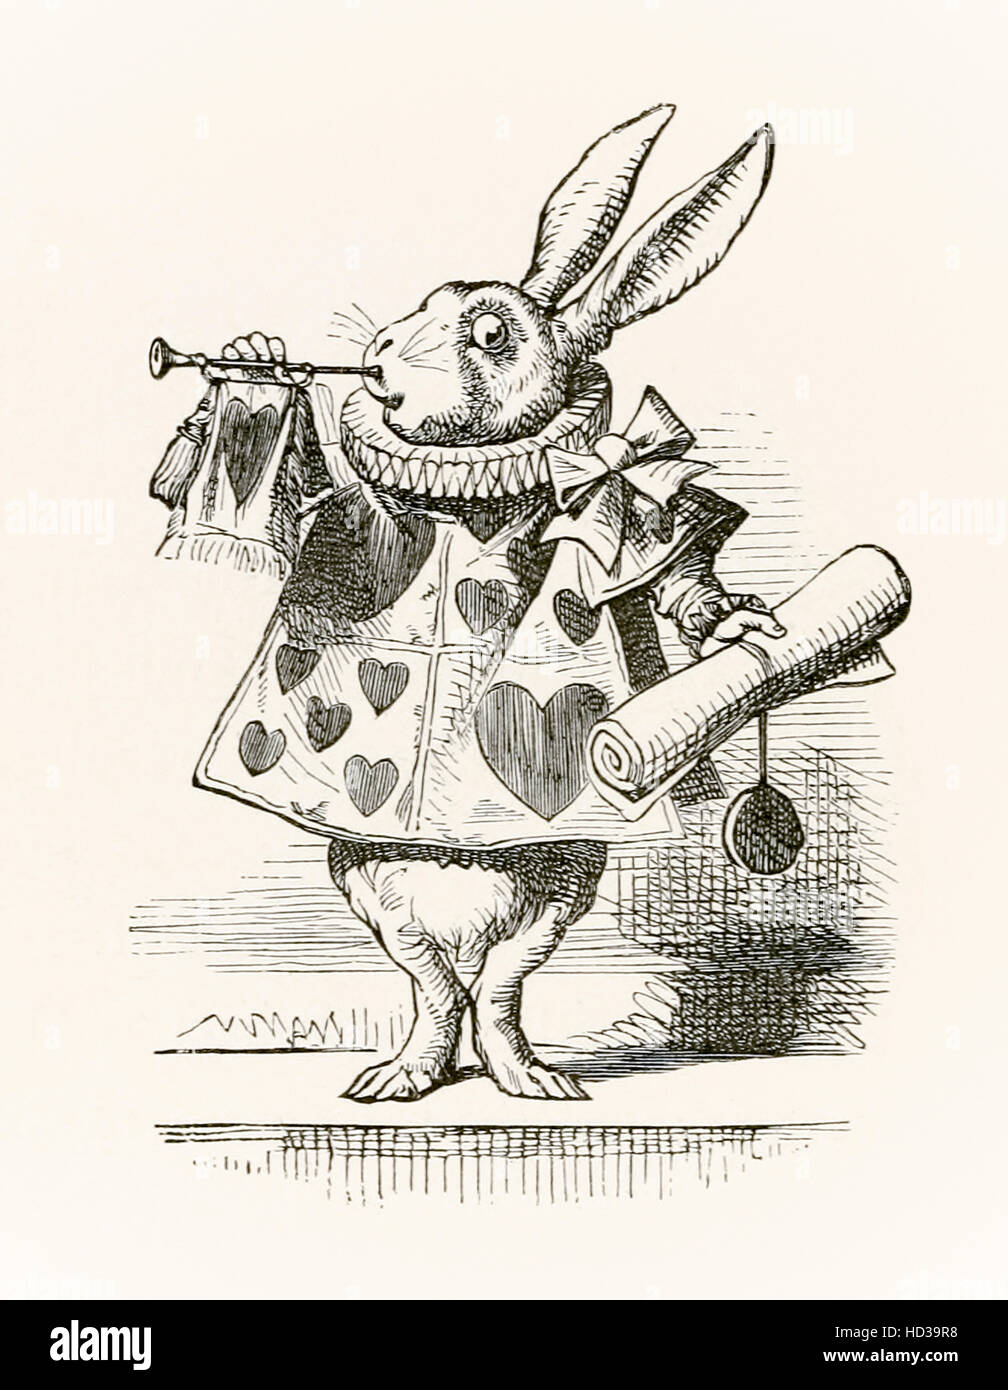 El conejo blanco con trompeta y desplácese anunciando la acusación, ilustración por Sir John Tenniel (1820-1914) de "Alicia en el país de las Maravillas" de Lewis Carroll publicado por primera vez en 1865. Foto de stock